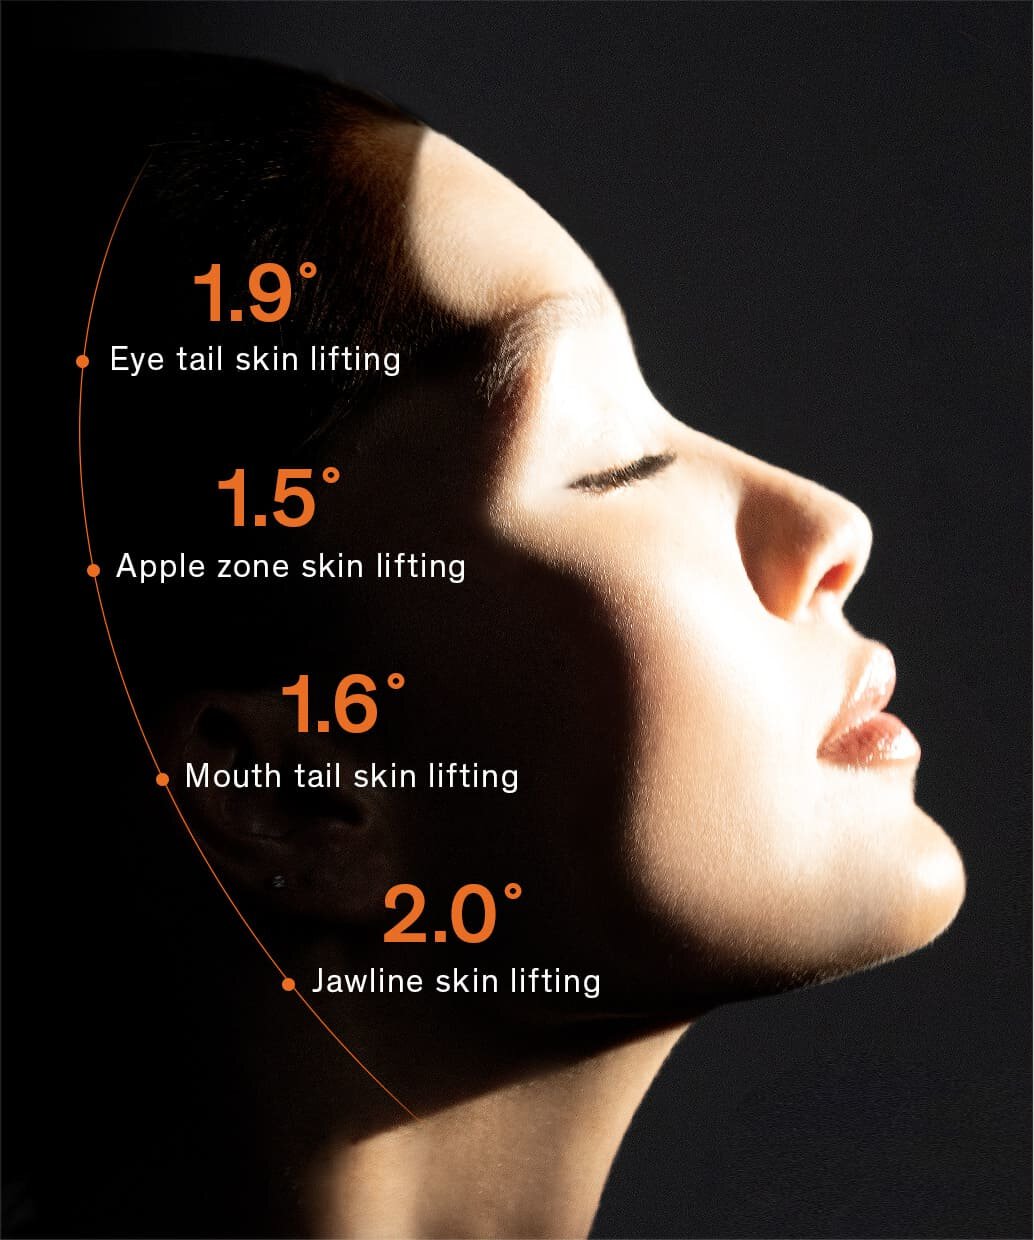 1.9° Eye tail skin lifting, 1.5° Apple zone skin lifting, 1.6° Mouth tail skin lifting, 2.0° Jawline skin lifting